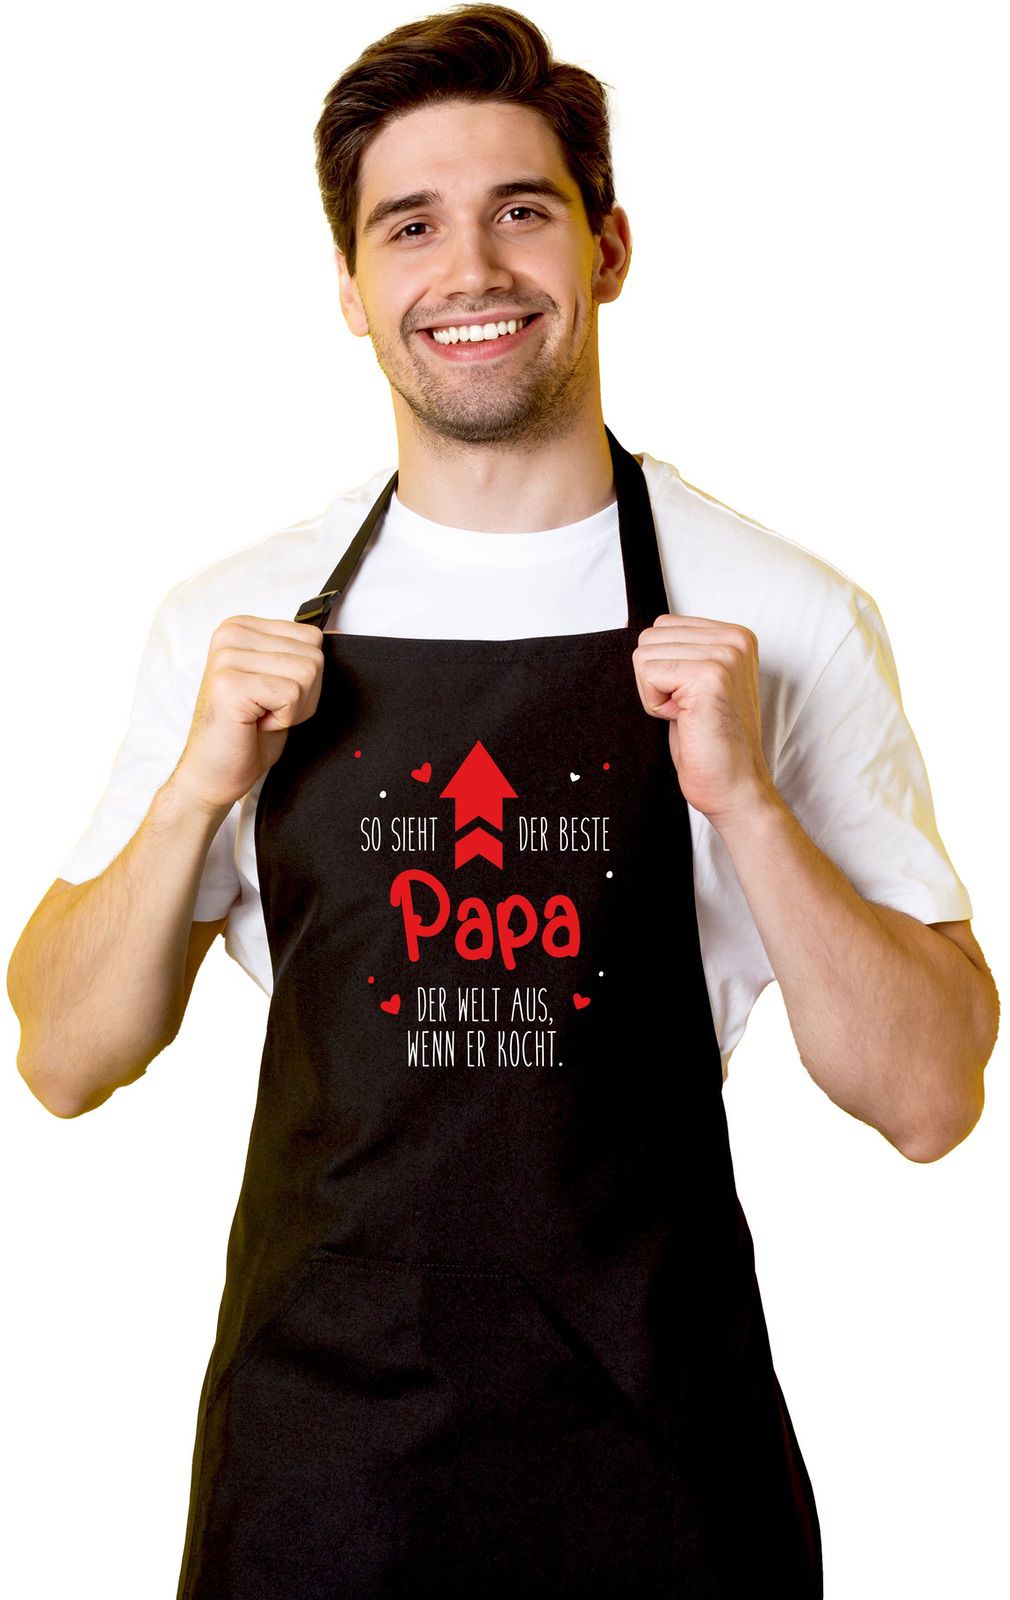 Bild: Kochschürze - So sieht der beste Papa der Welt aus, wenn er kocht Geschenkidee